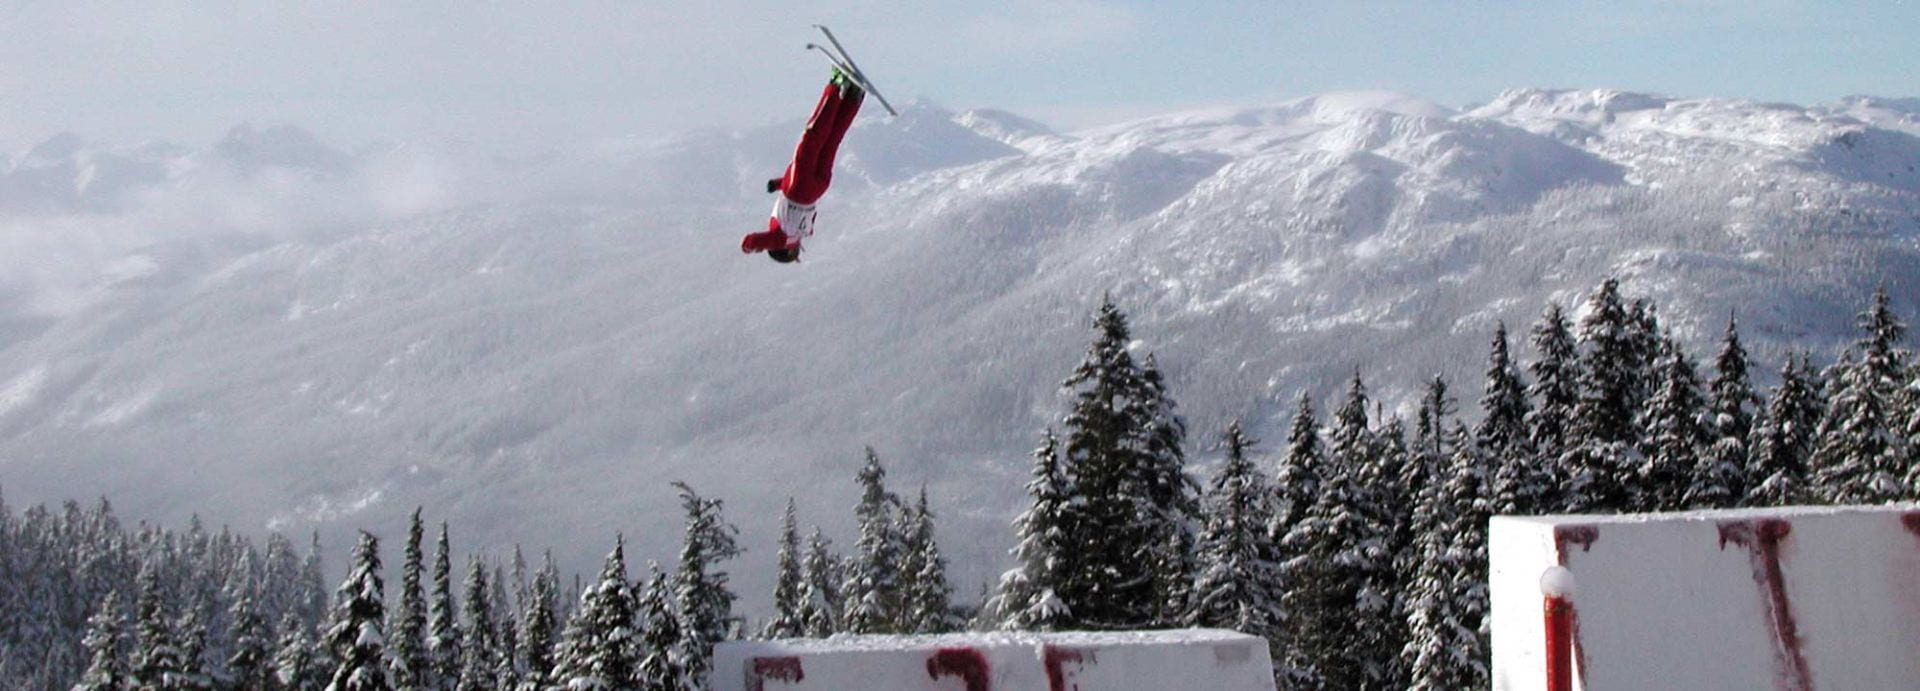 Aerial ski jumper in flight